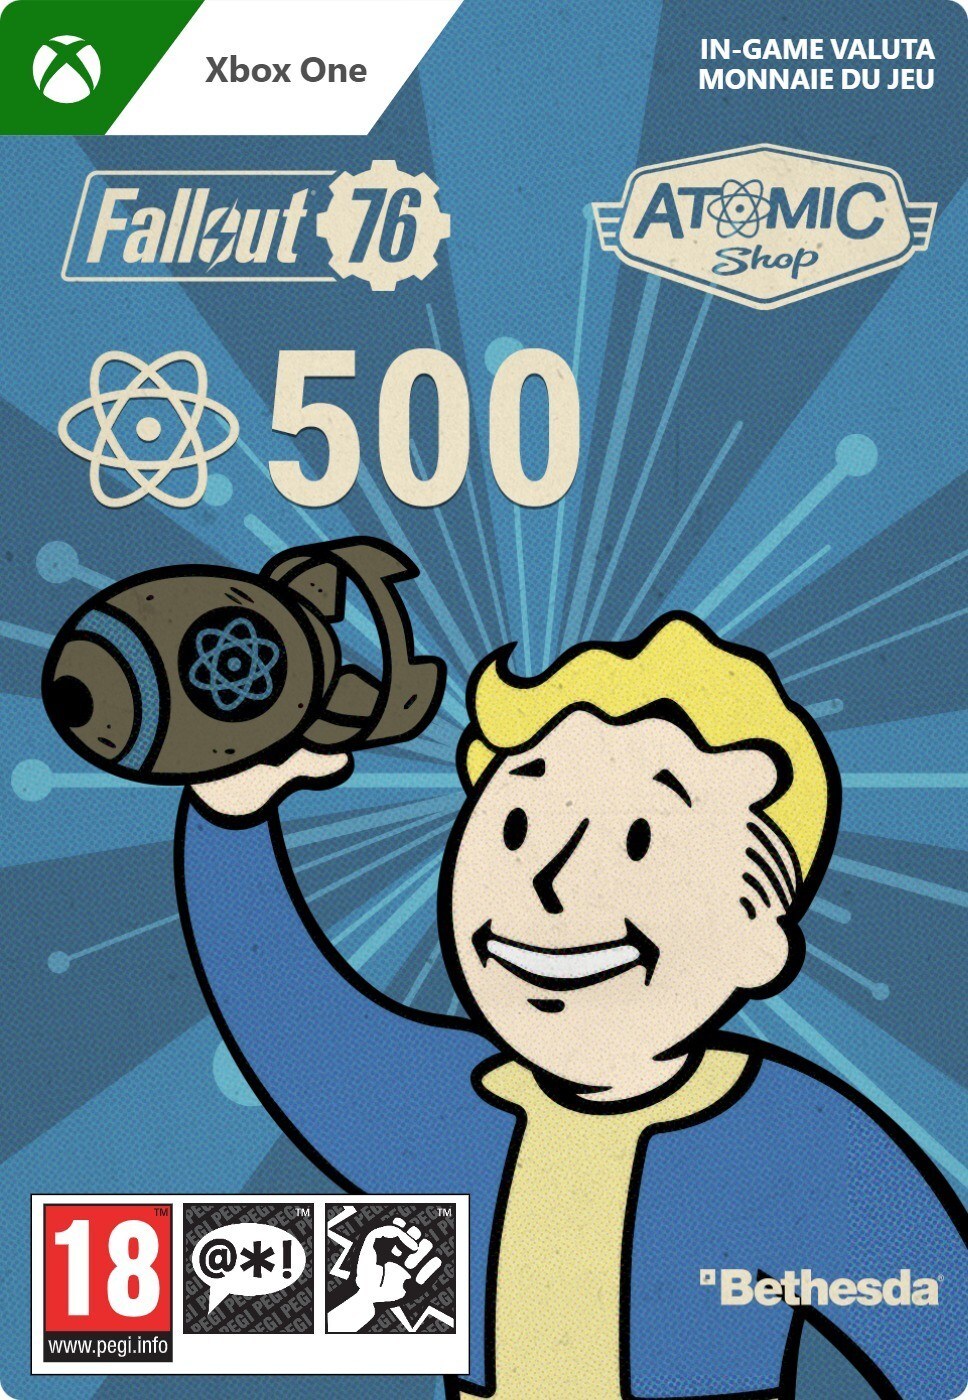 Bethesda Atoms - Fallout 76